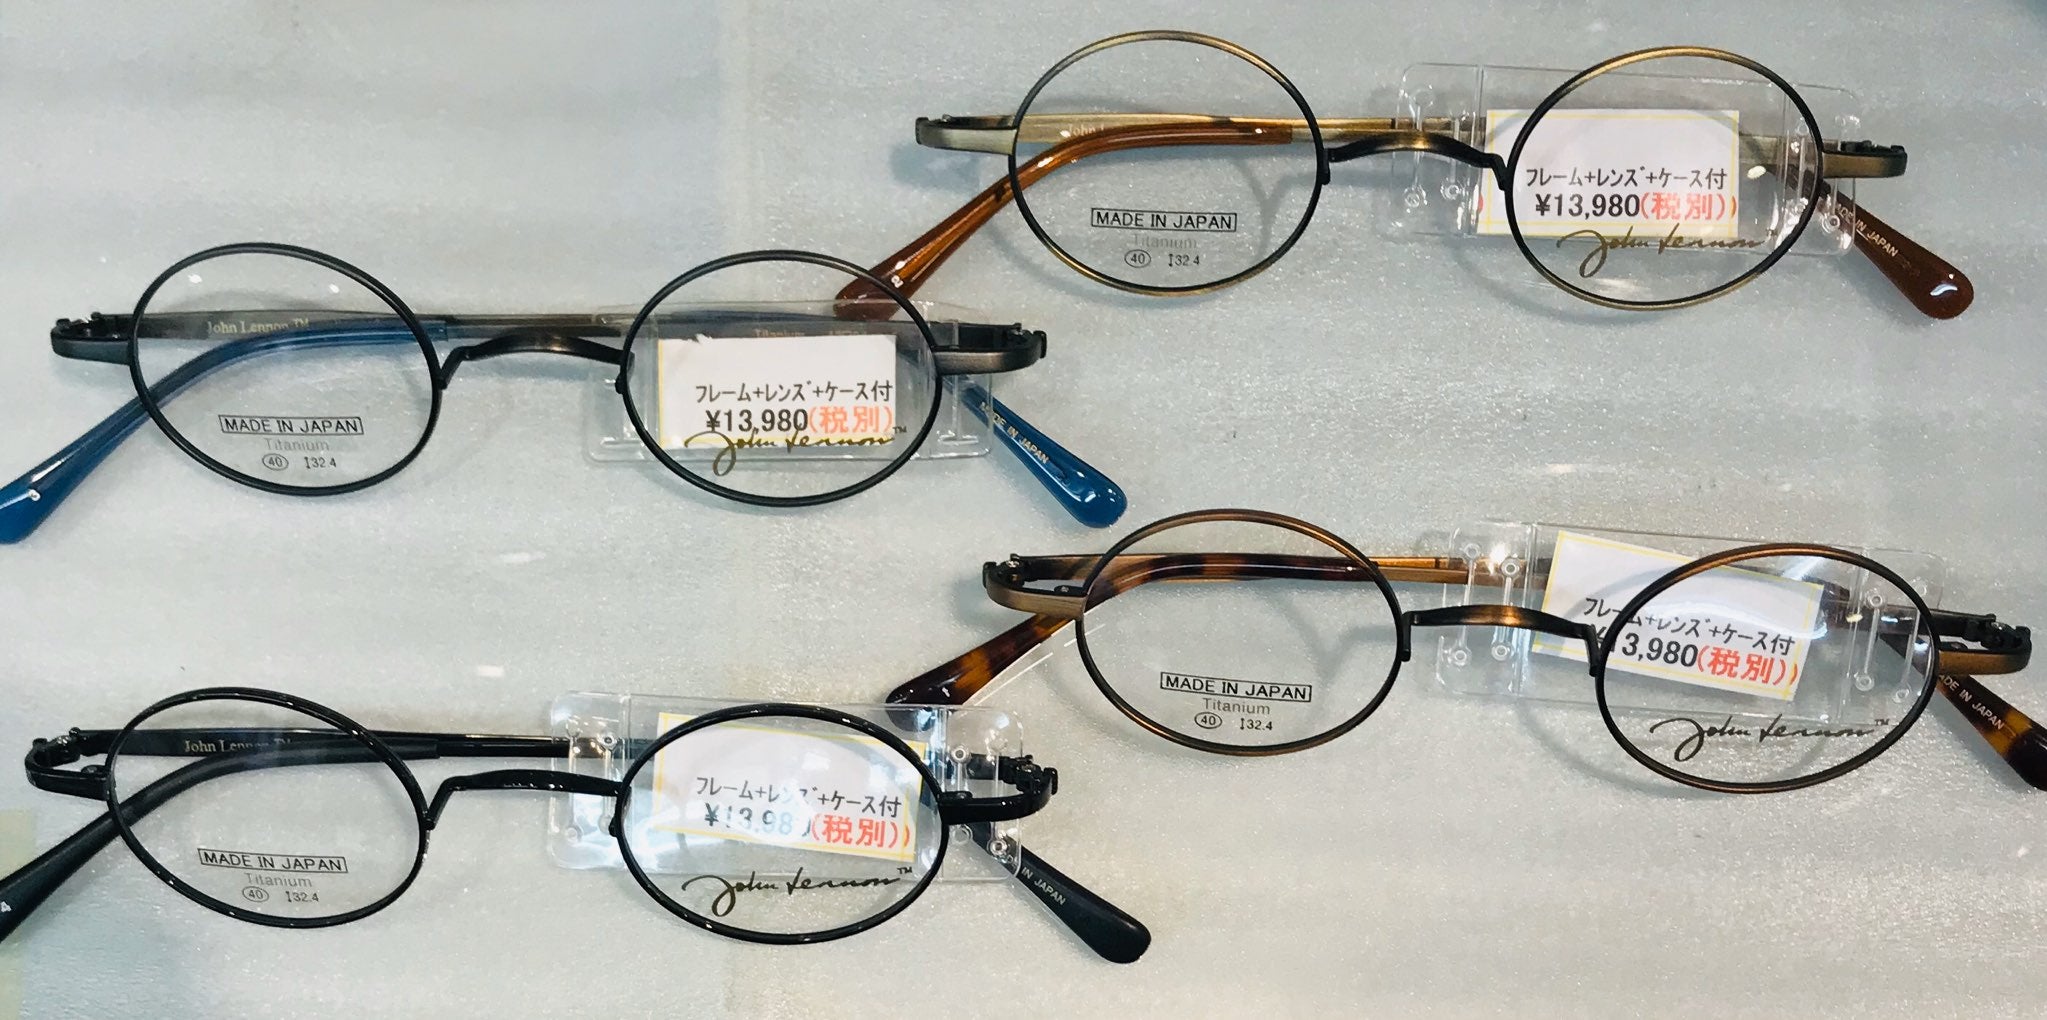 ジョンレノンの丸眼鏡入荷しました！一山式の極小丸メガネ！ | 東京の激安メガネめがねおー御徒町店